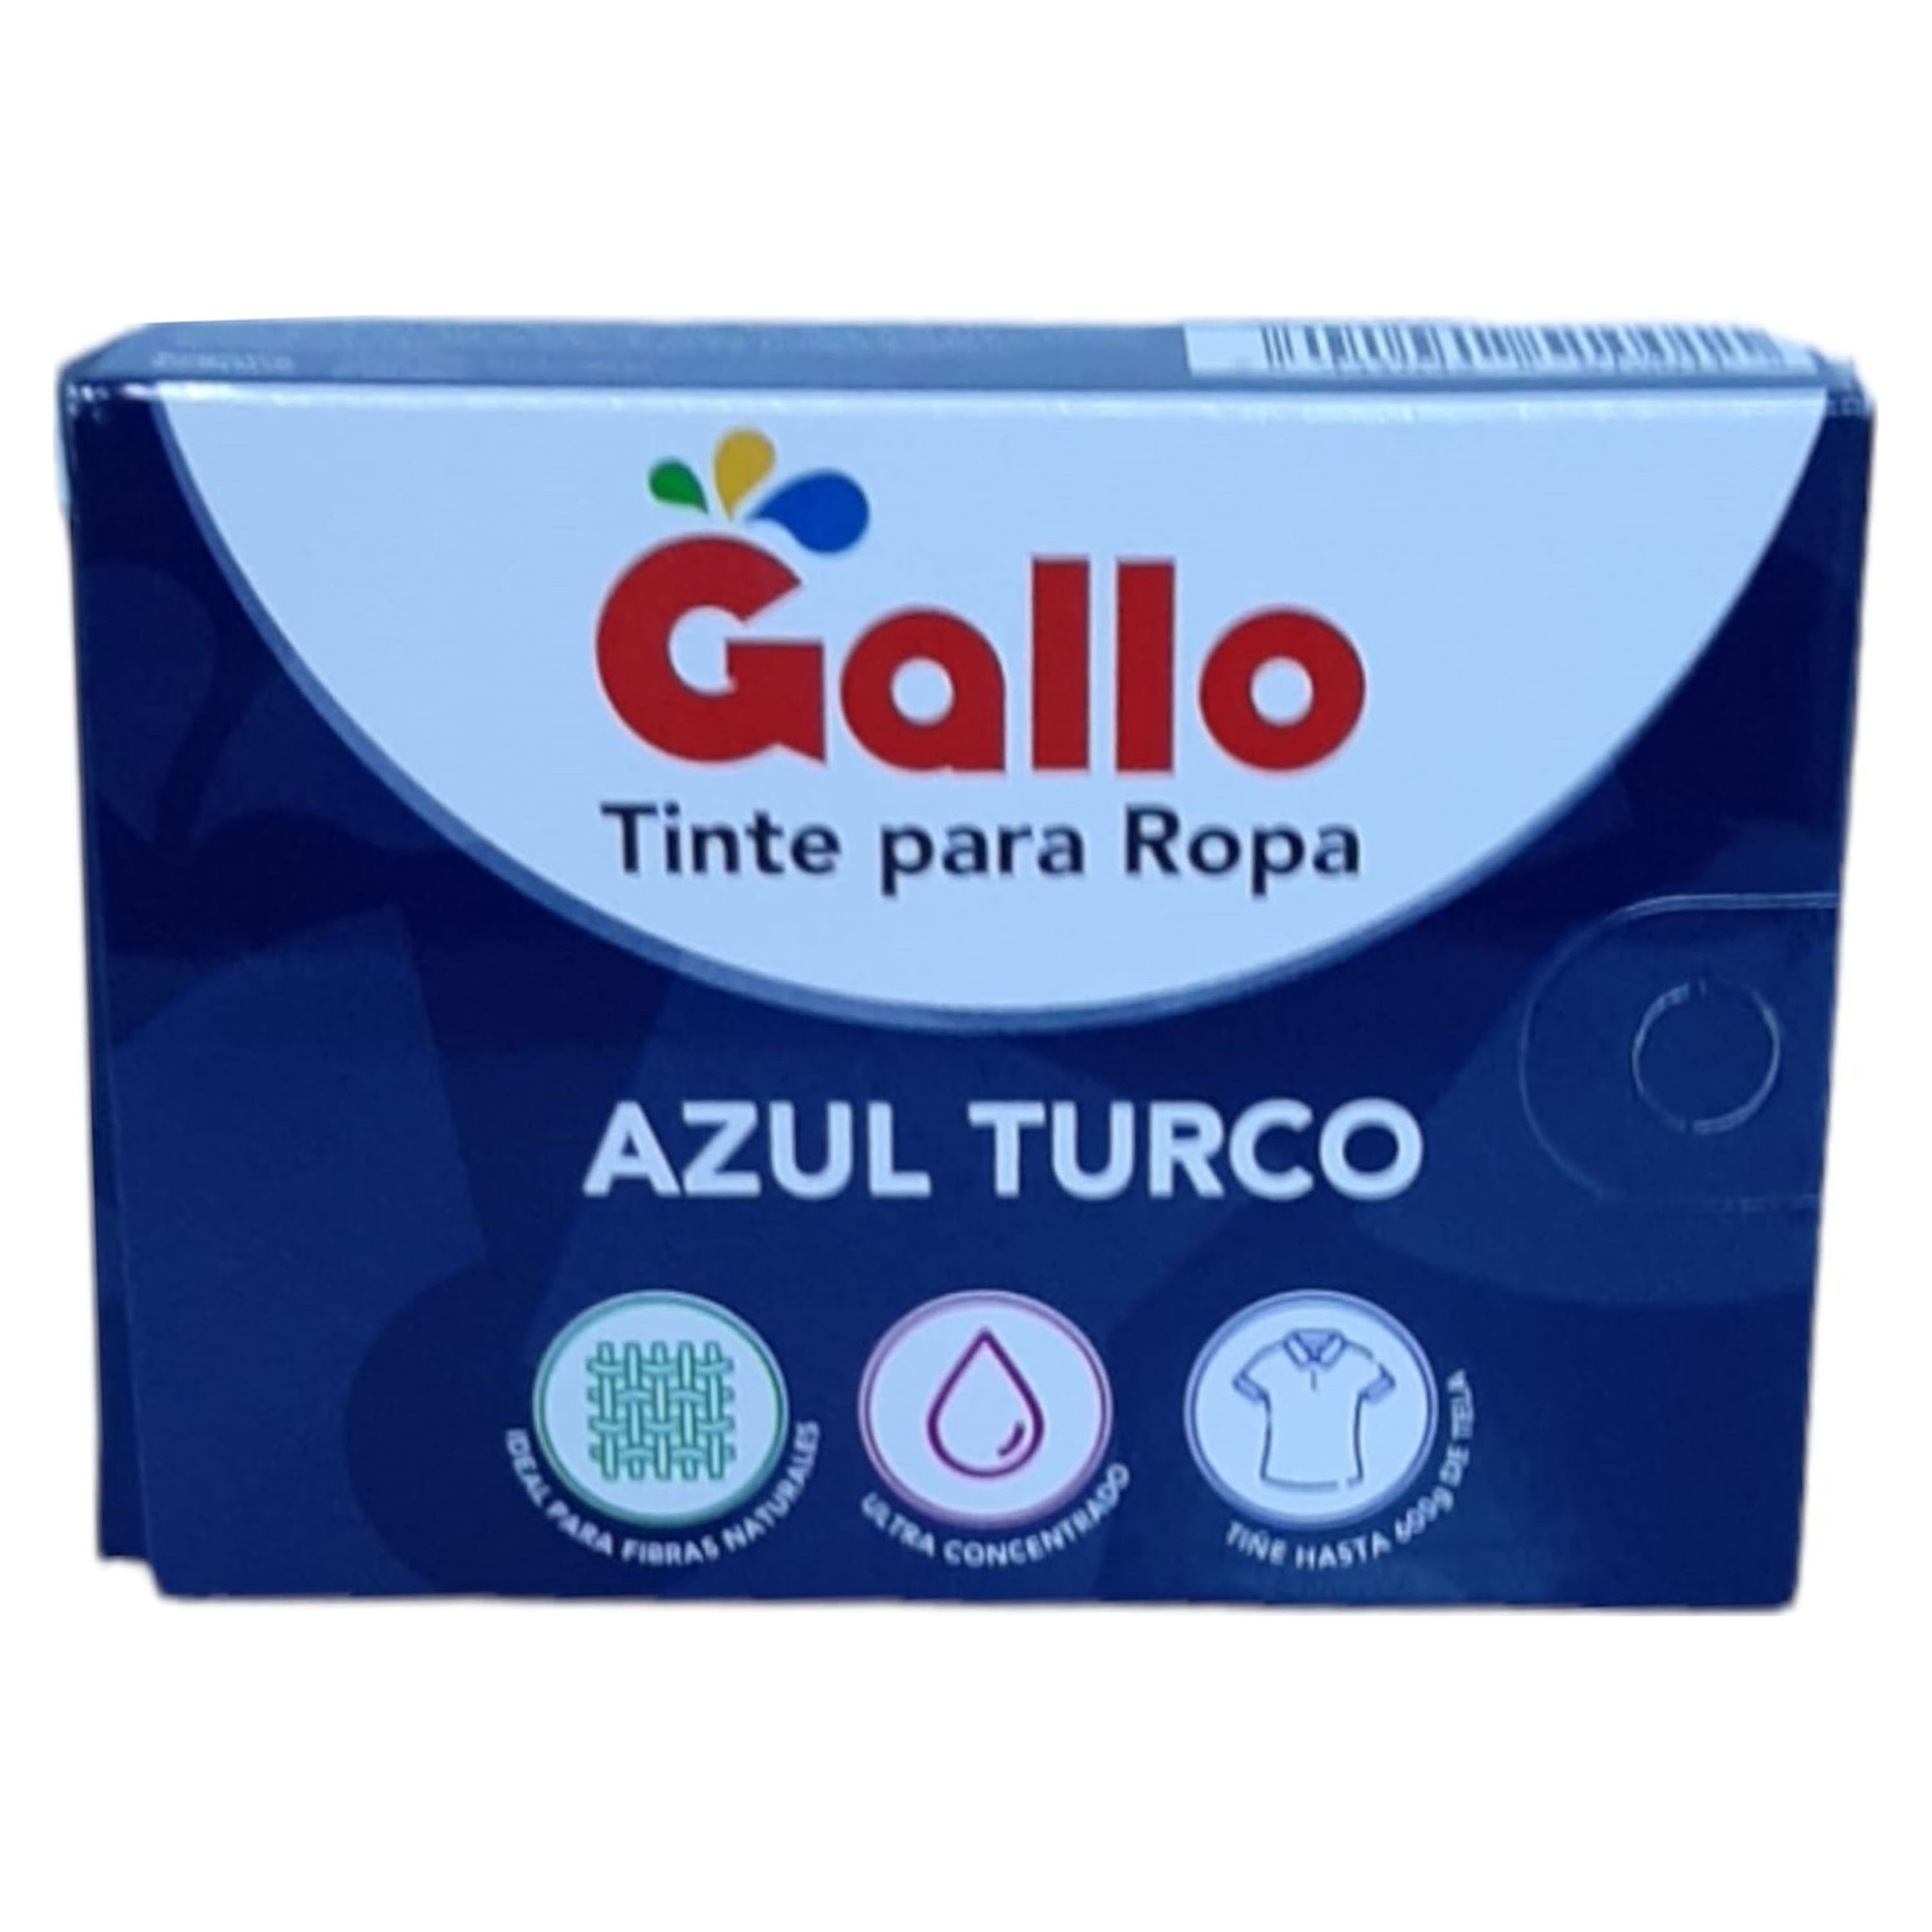 Tinte En Polvo Ropa Color Azul Turco | Walmart Costa Rica